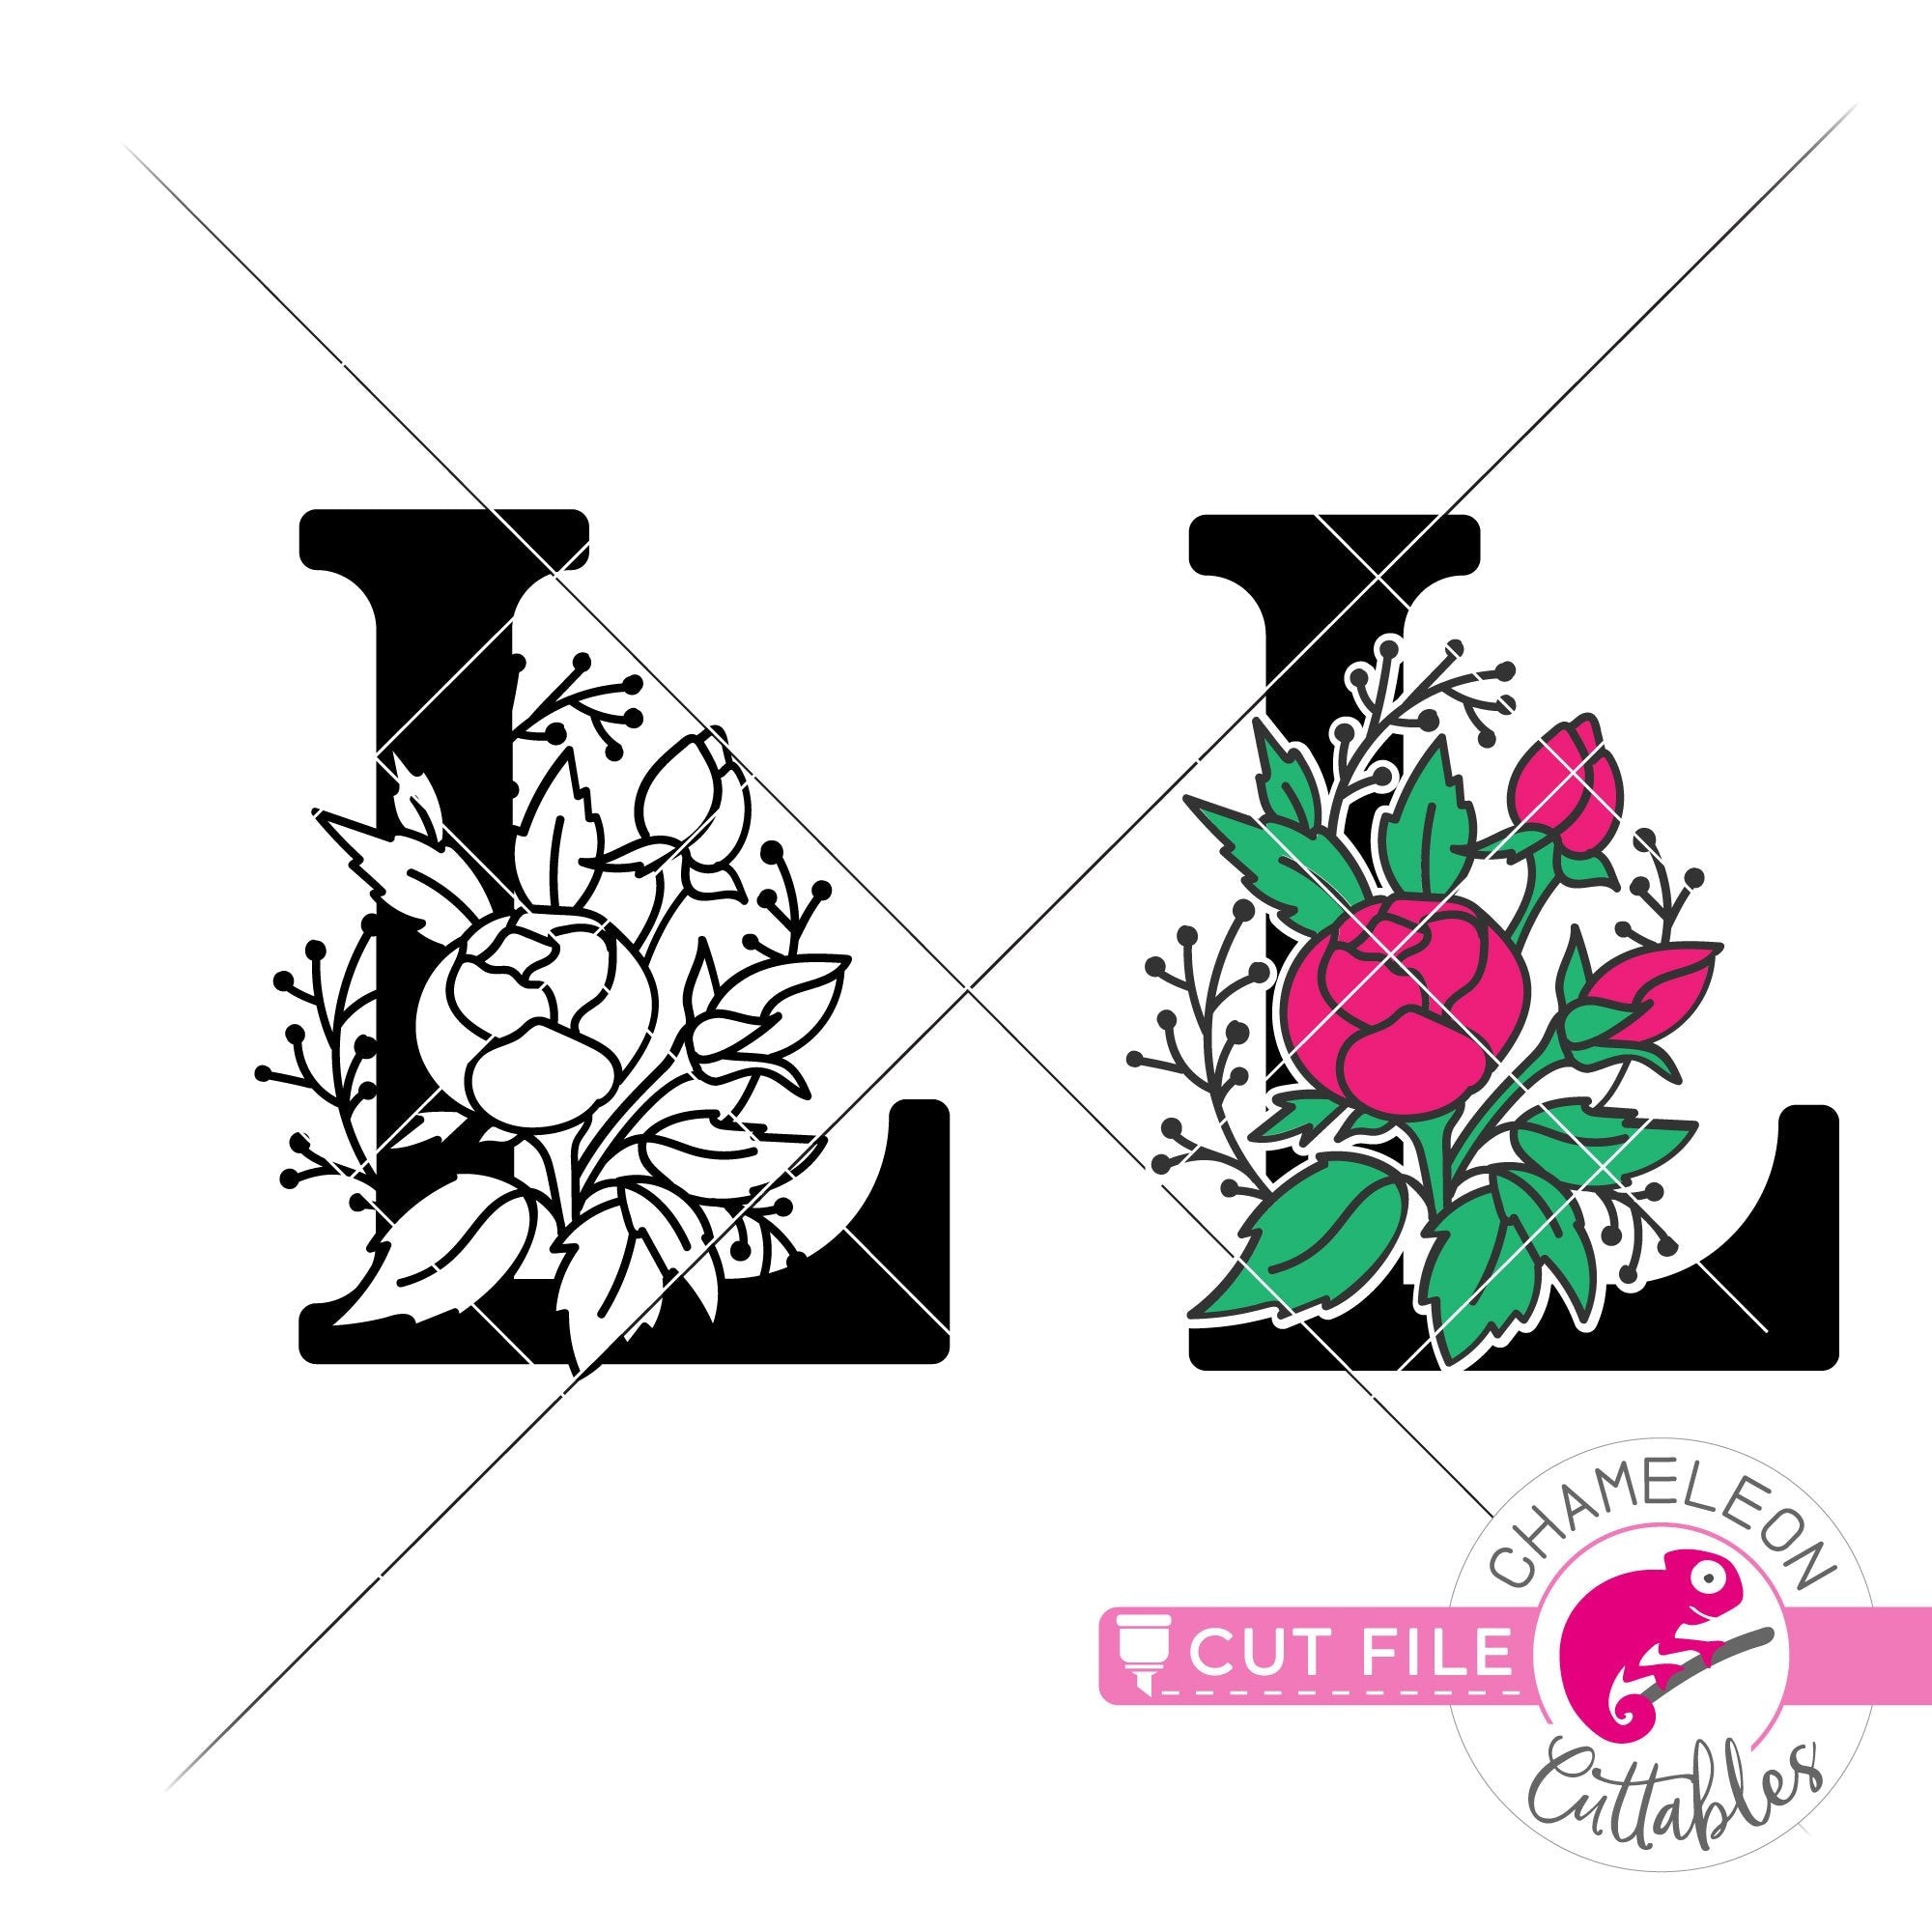 Download L Floral Monogram Letter With Flowers Svg Png Dxf Eps Jpeg Chameleon Cuttables Llc Chameleon Cuttables Llc